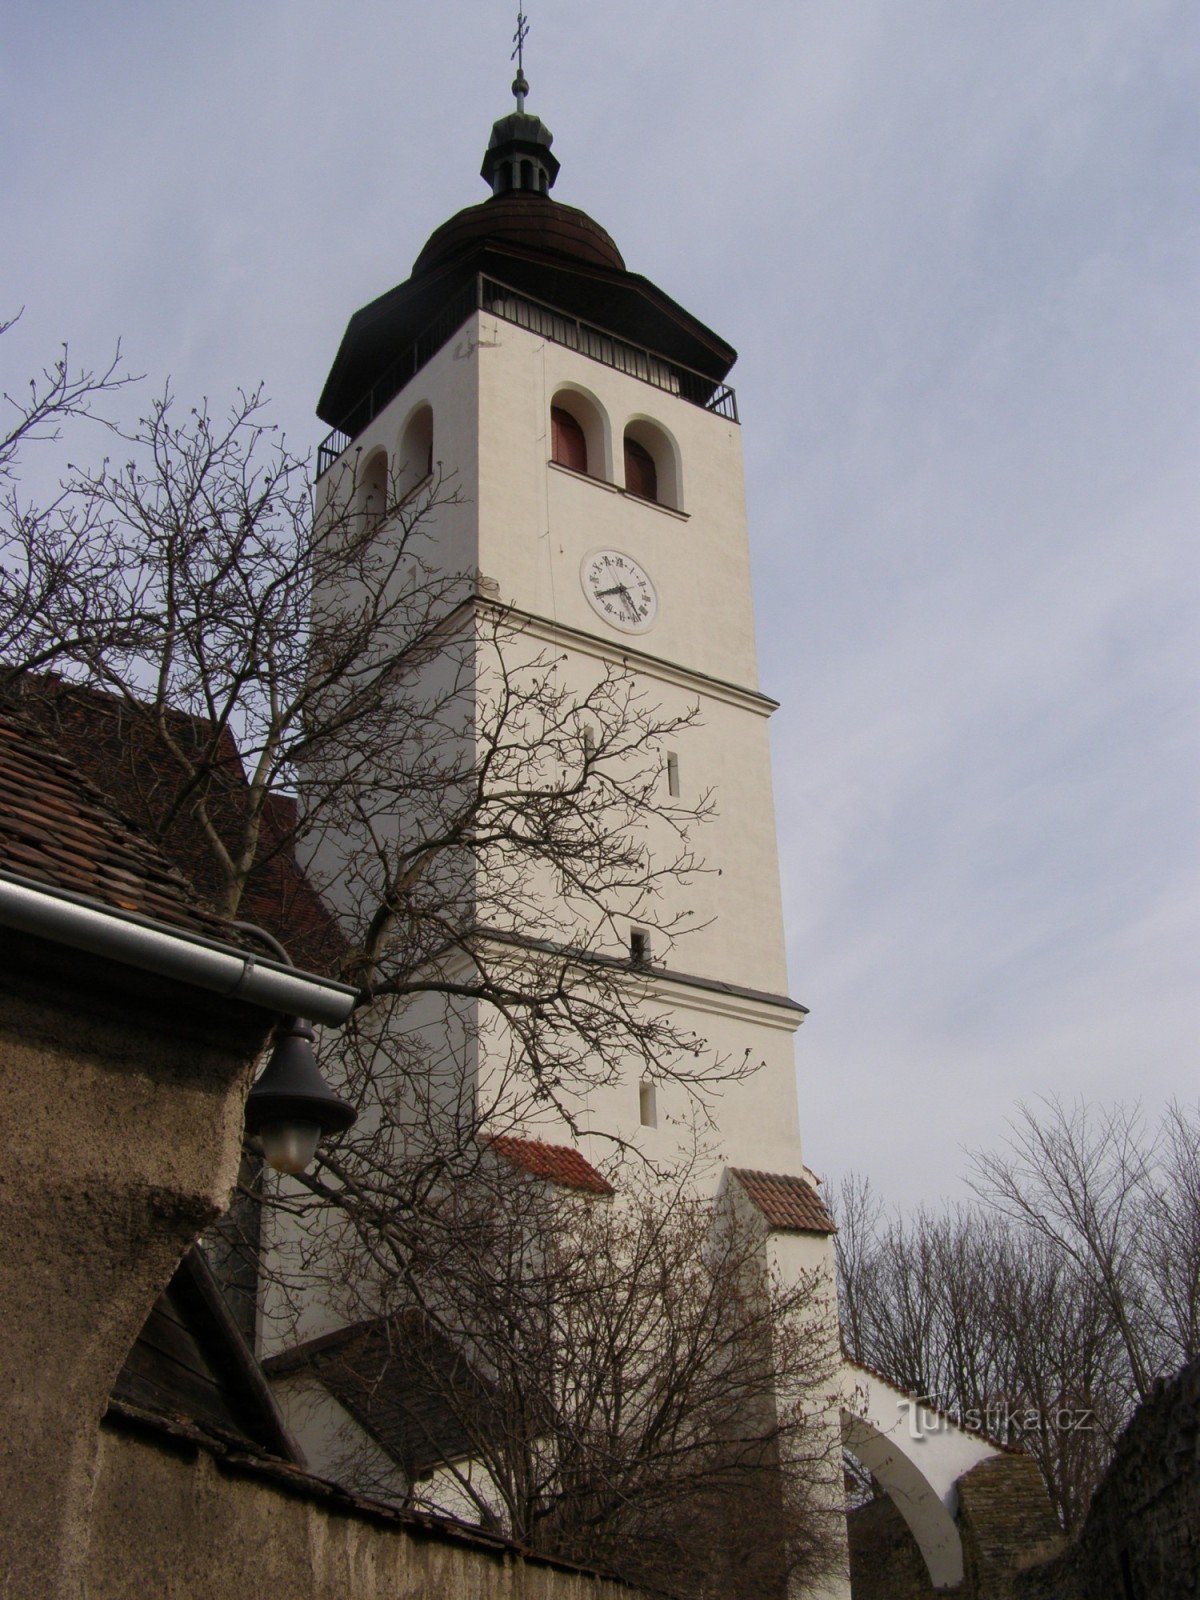 Nové Město nad Metují - Den heliga treenighetens kyrka